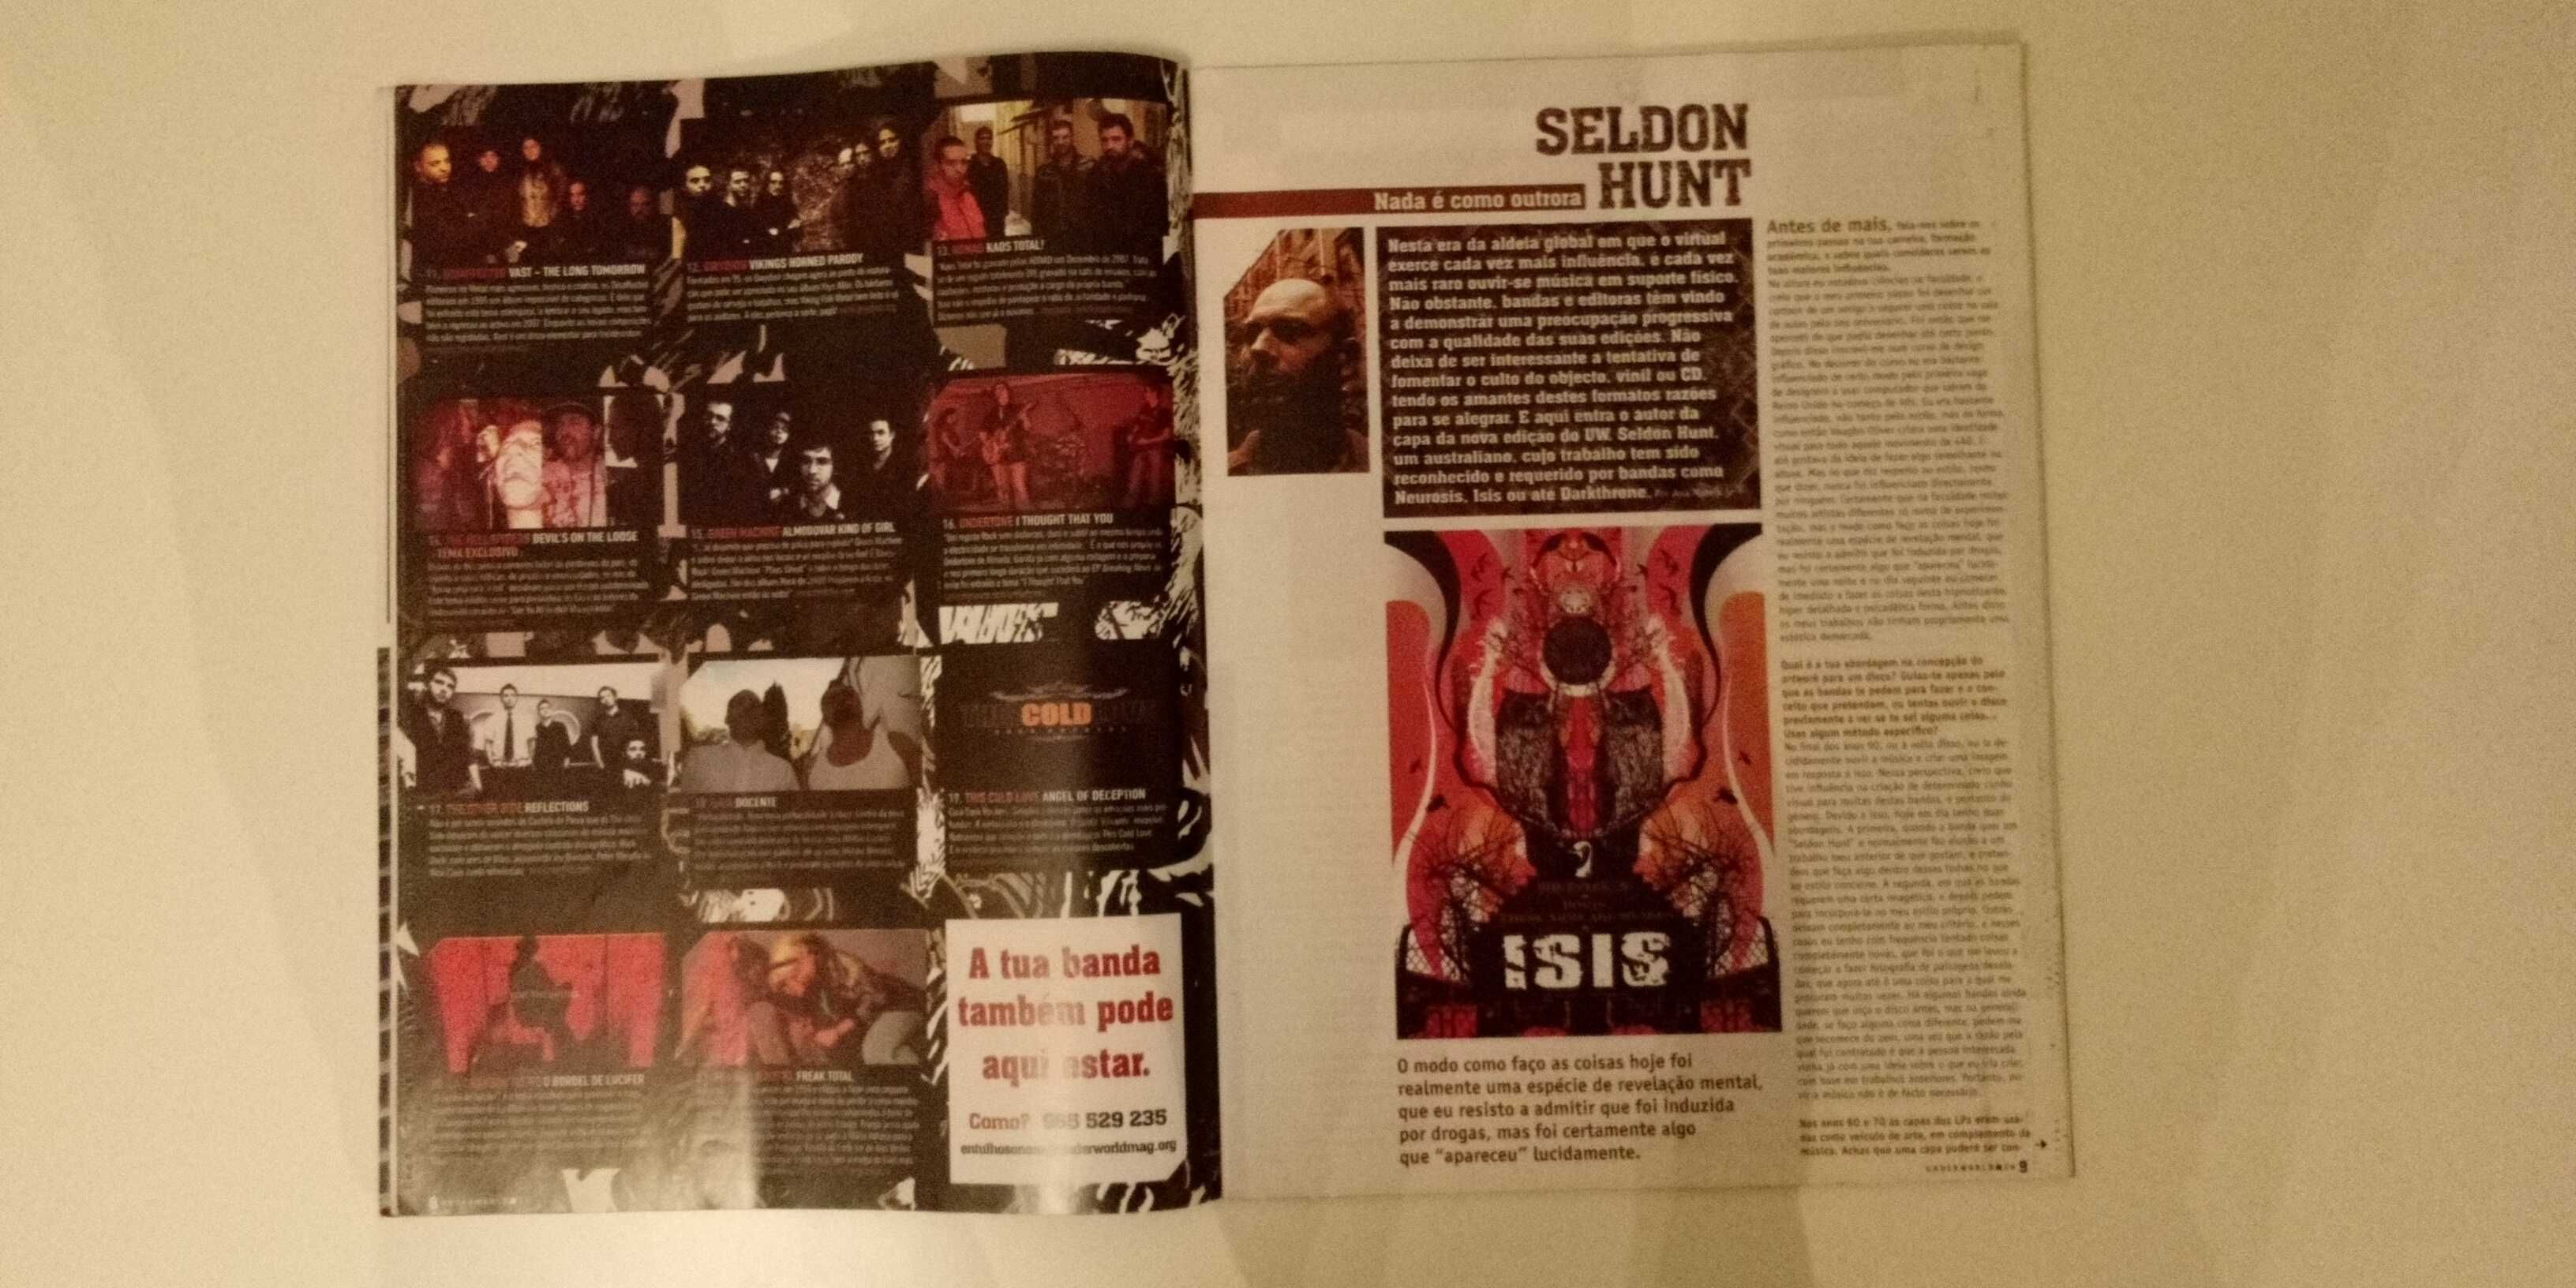 Underworld #24 #26 revistas Metal Rock Punk BD cinema arte literatura